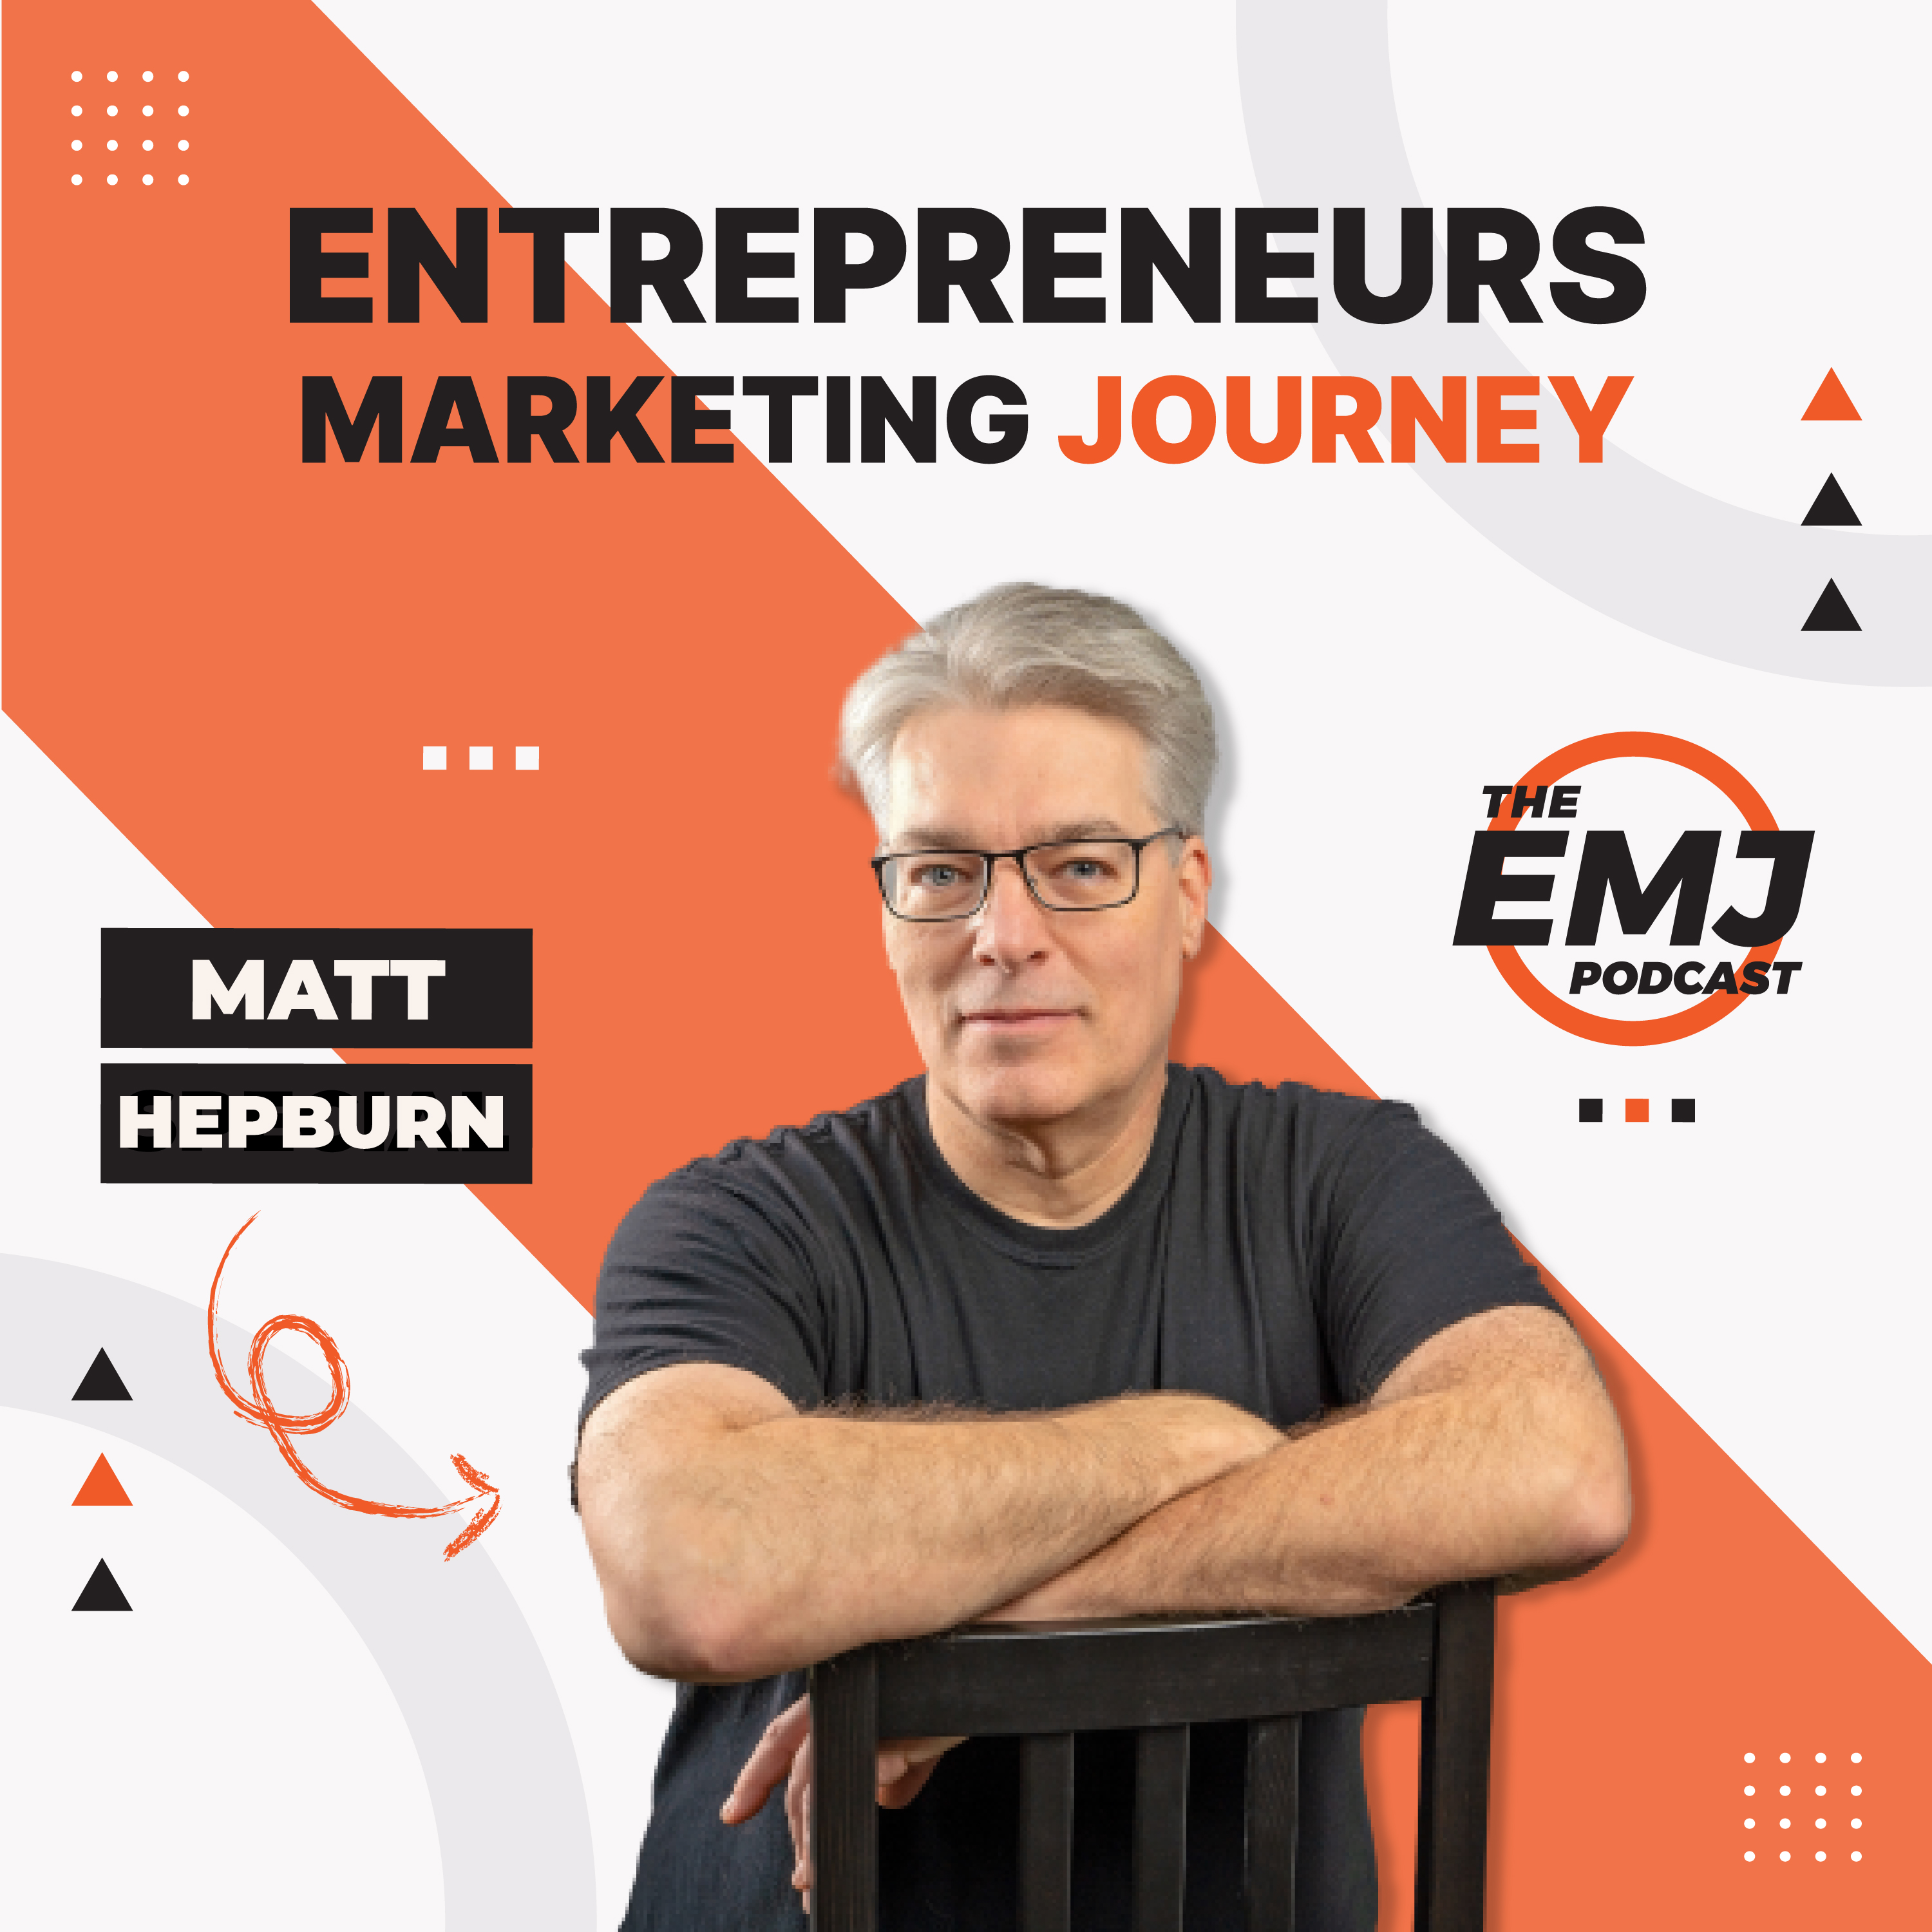 Artwork for podcast The EMJ Podcast With Matt Hepburn